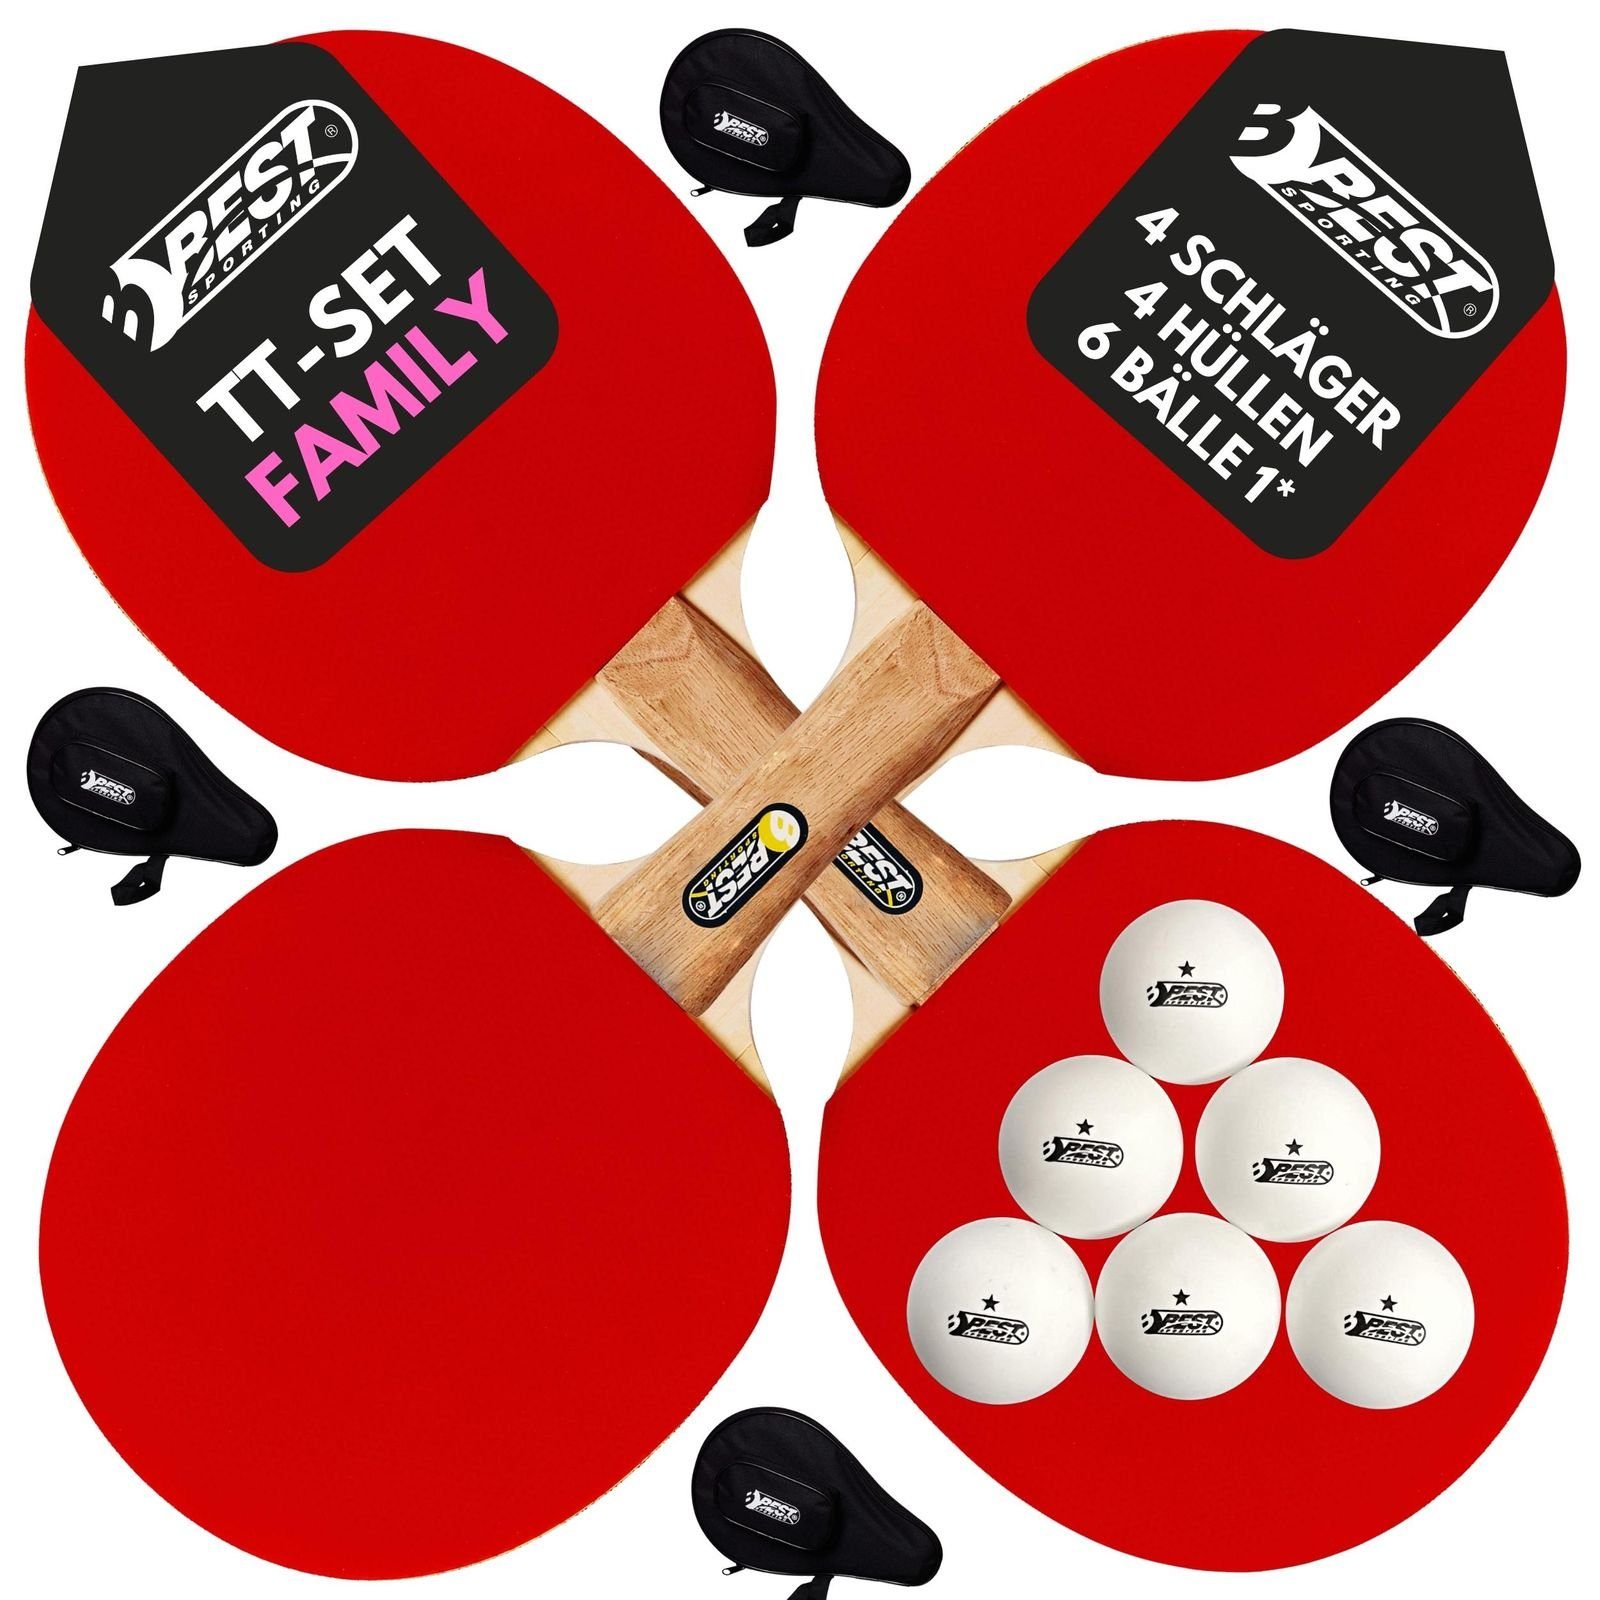 Best Sporting Tischtennisschläger Set FAMILY - 4 Schläger, 4 Taschen und 1* Tischtennisbälle (9-teiliges wertiges Tischtennis Set I Tischtennissets I Table Tennis Racket)